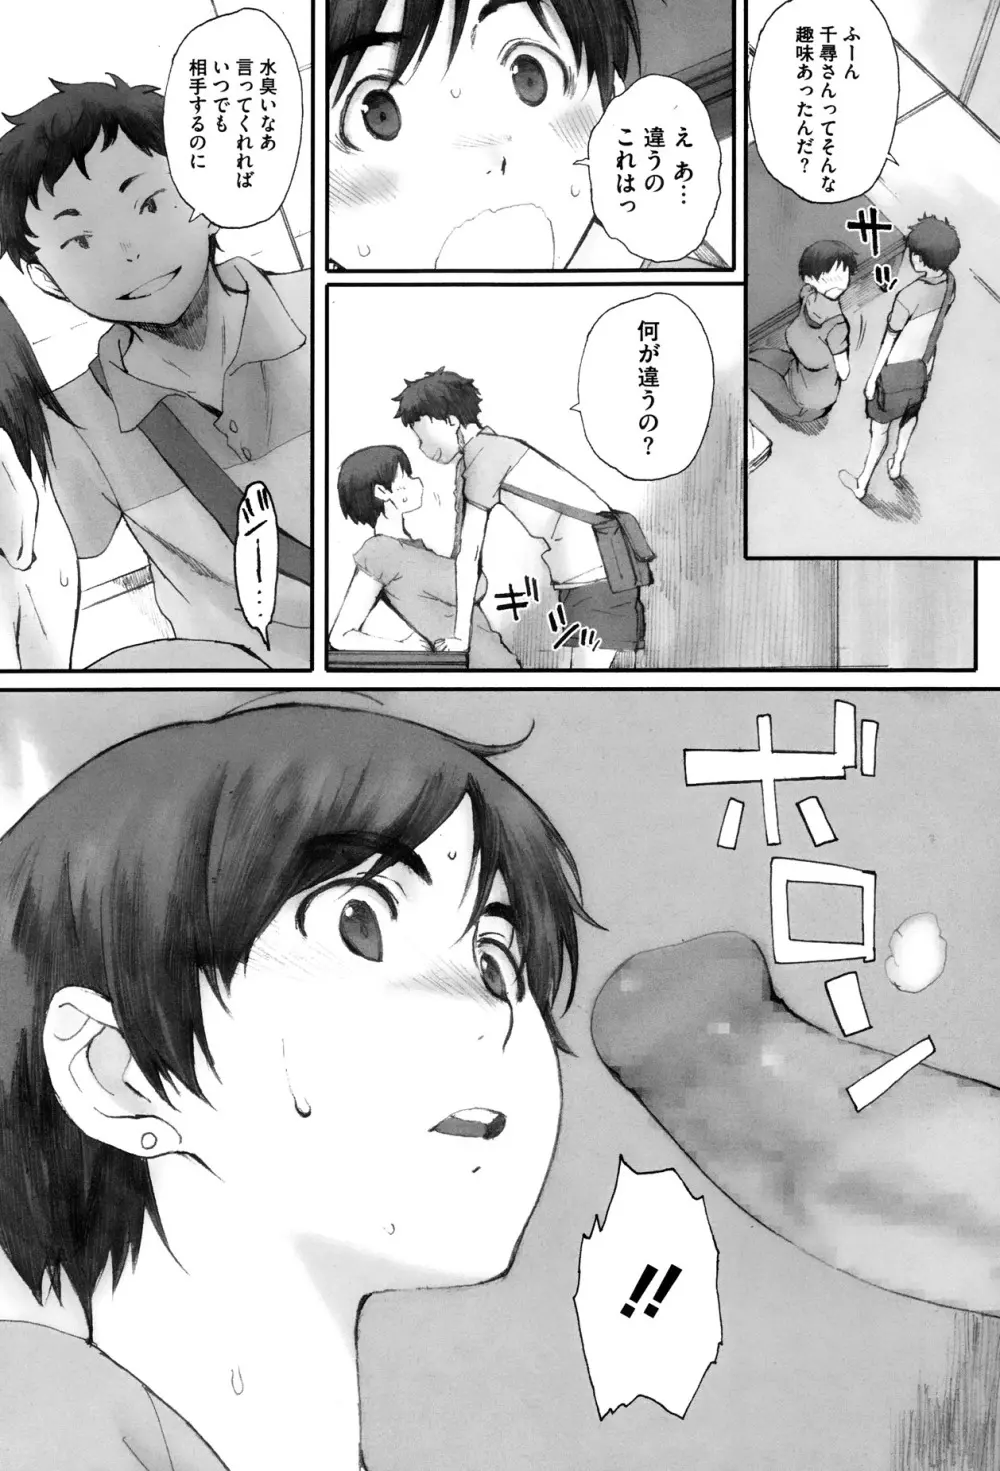 Kamakiri no su Ch.01-02 15ページ